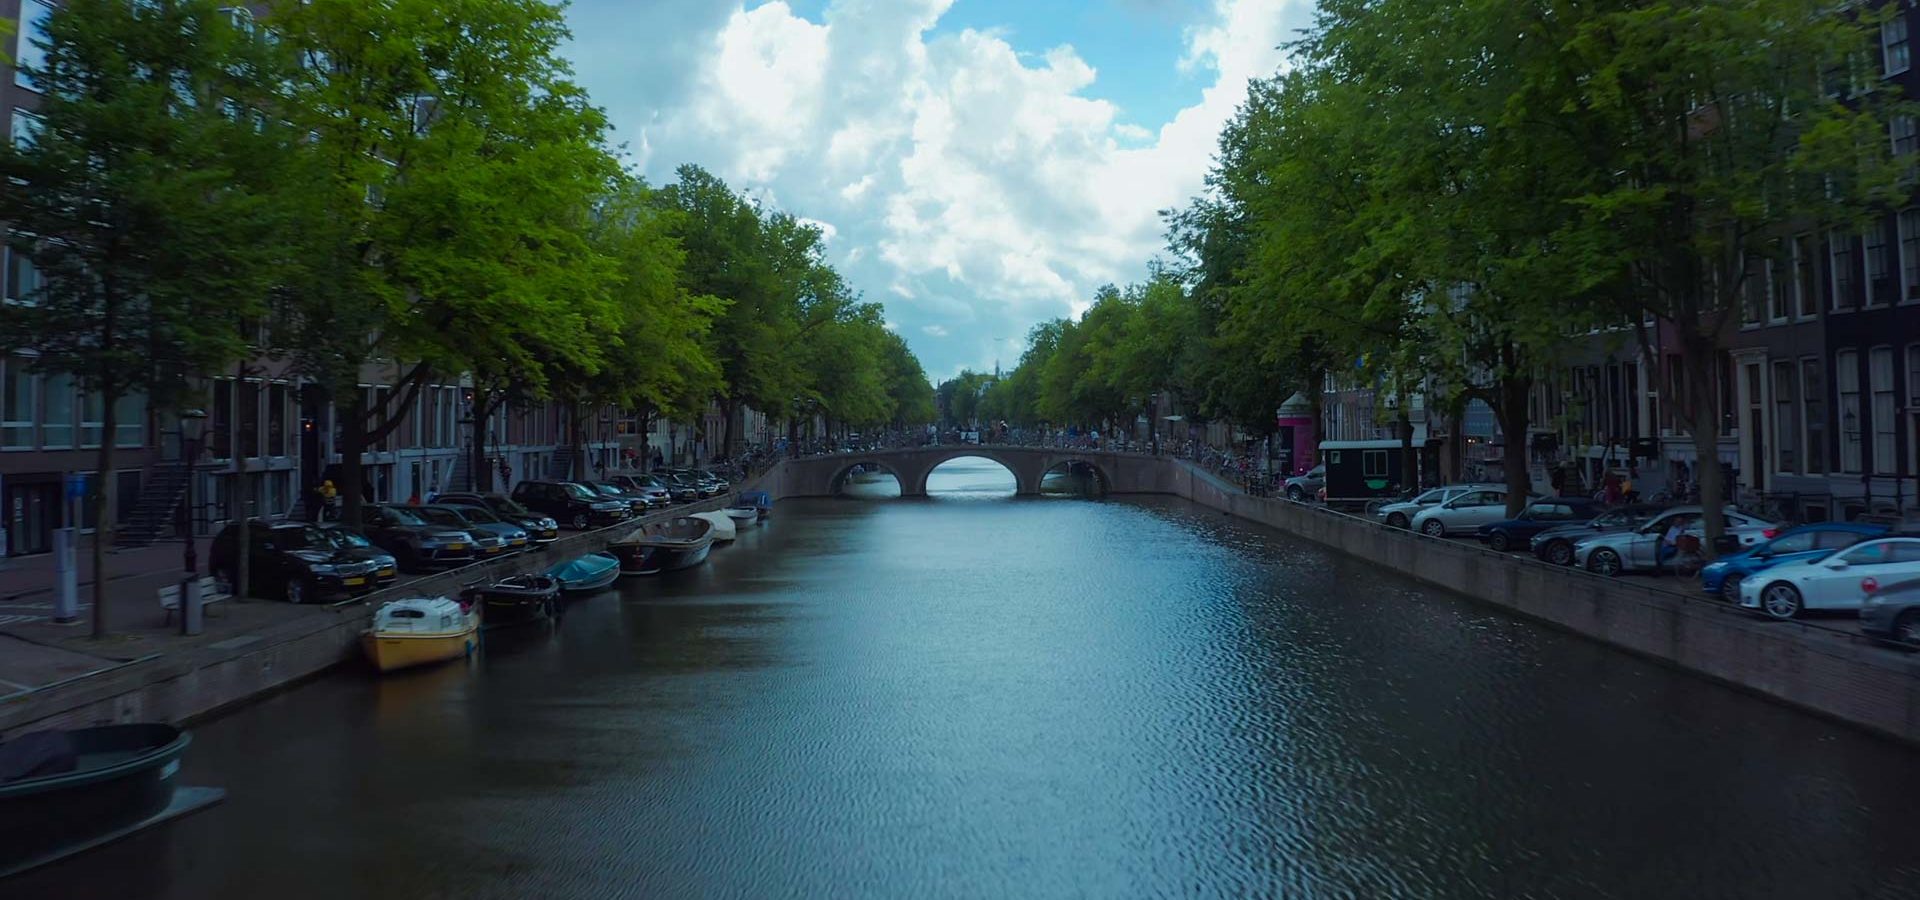 Top-Sehenswürdigkeiten in Amsterdam, Niederlande